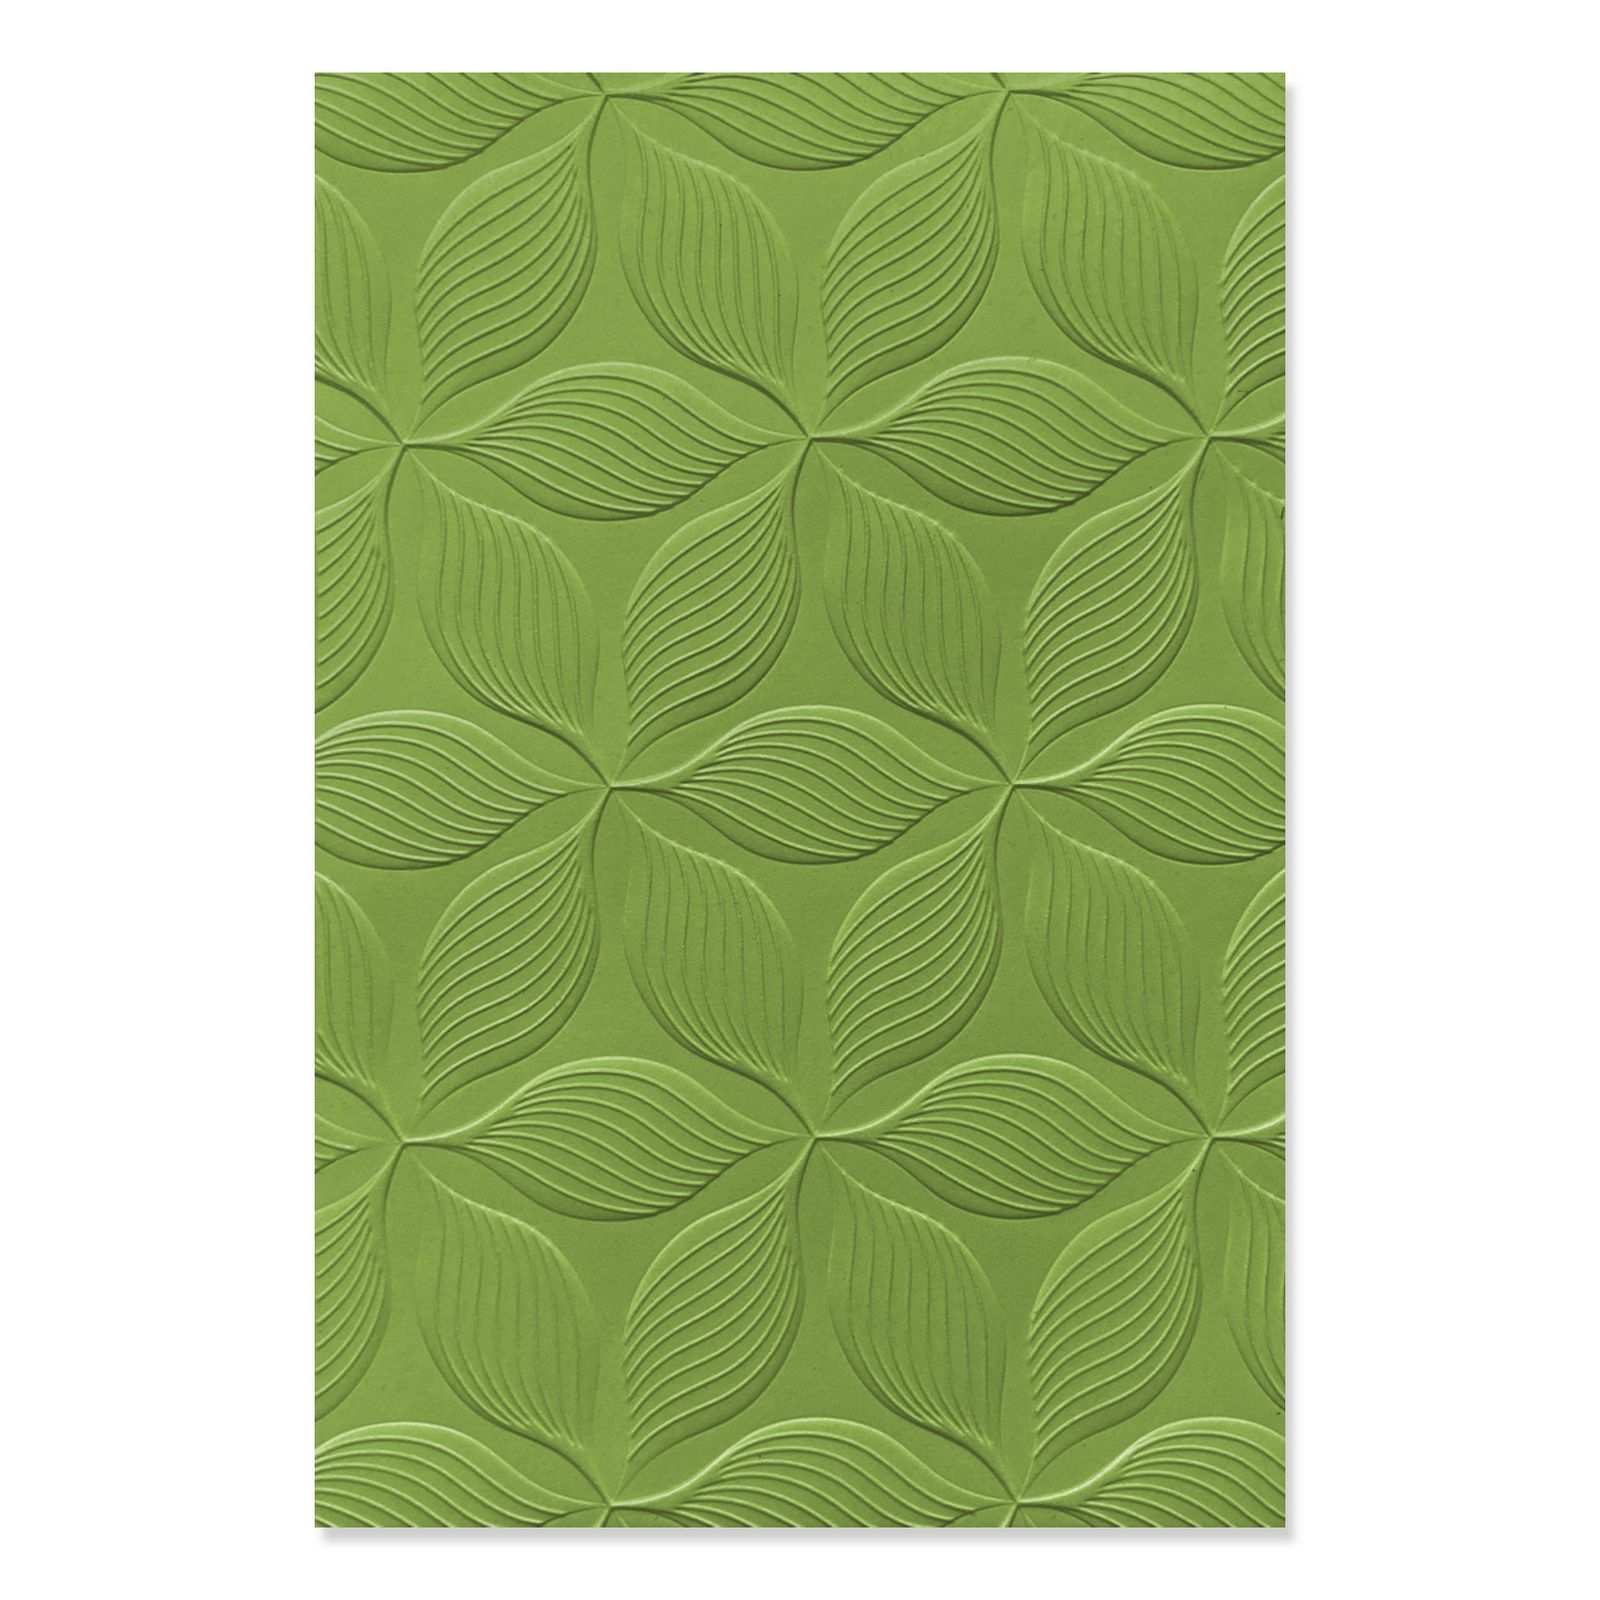 Sizzix • 3D Textured Impressions Embossing Folder Defined Petals